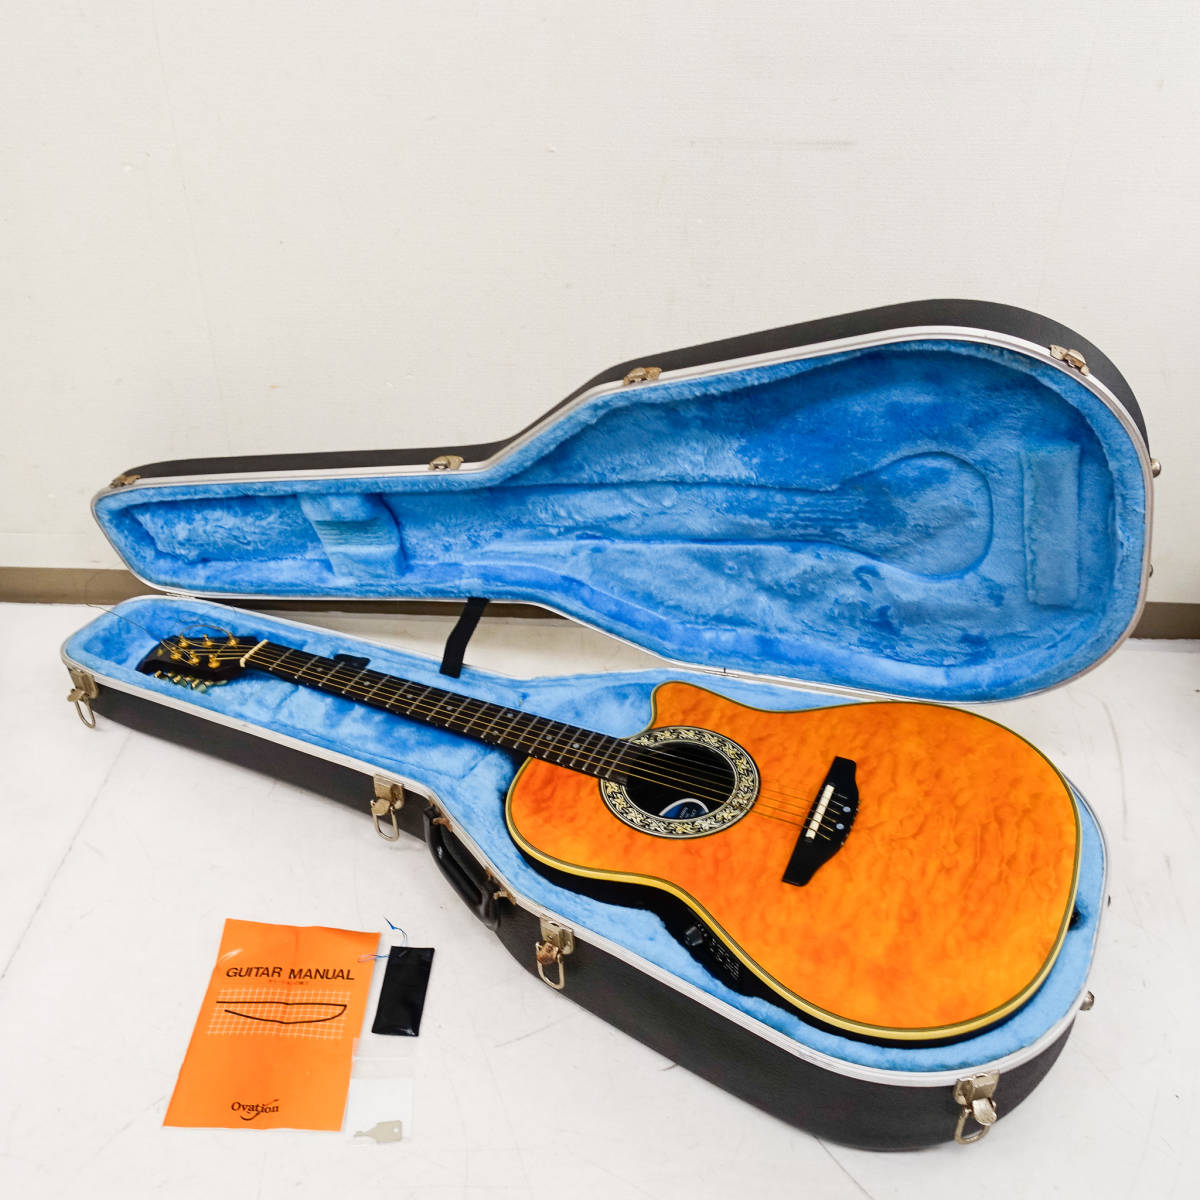 Ovation オベーション エレクトリックアコースティックギター MODEL No.3860 Pinnacle Series エレアコ ハードケース付 K3263_画像1